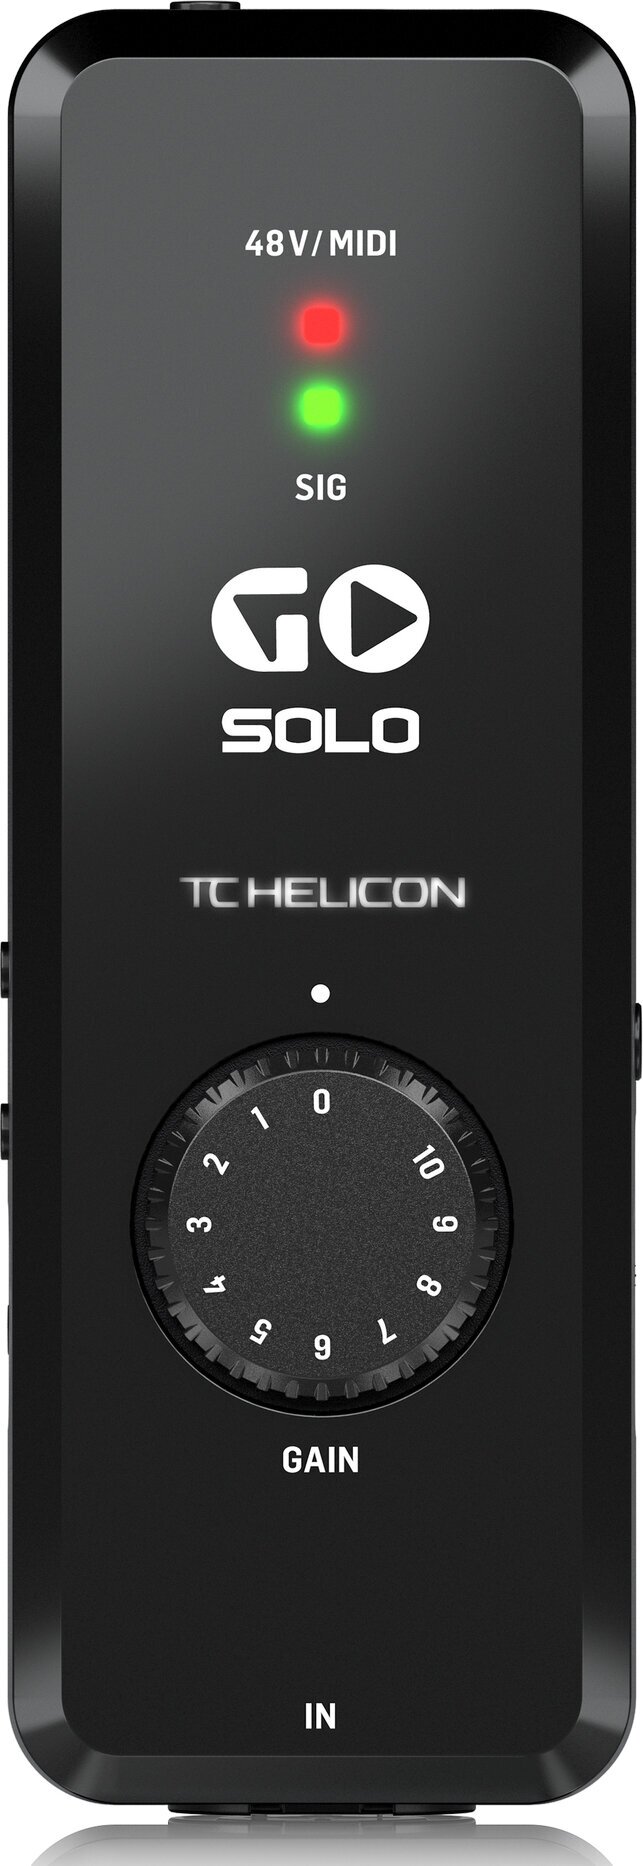 Внешняя звуковая карта TC Helicon GO SOLO